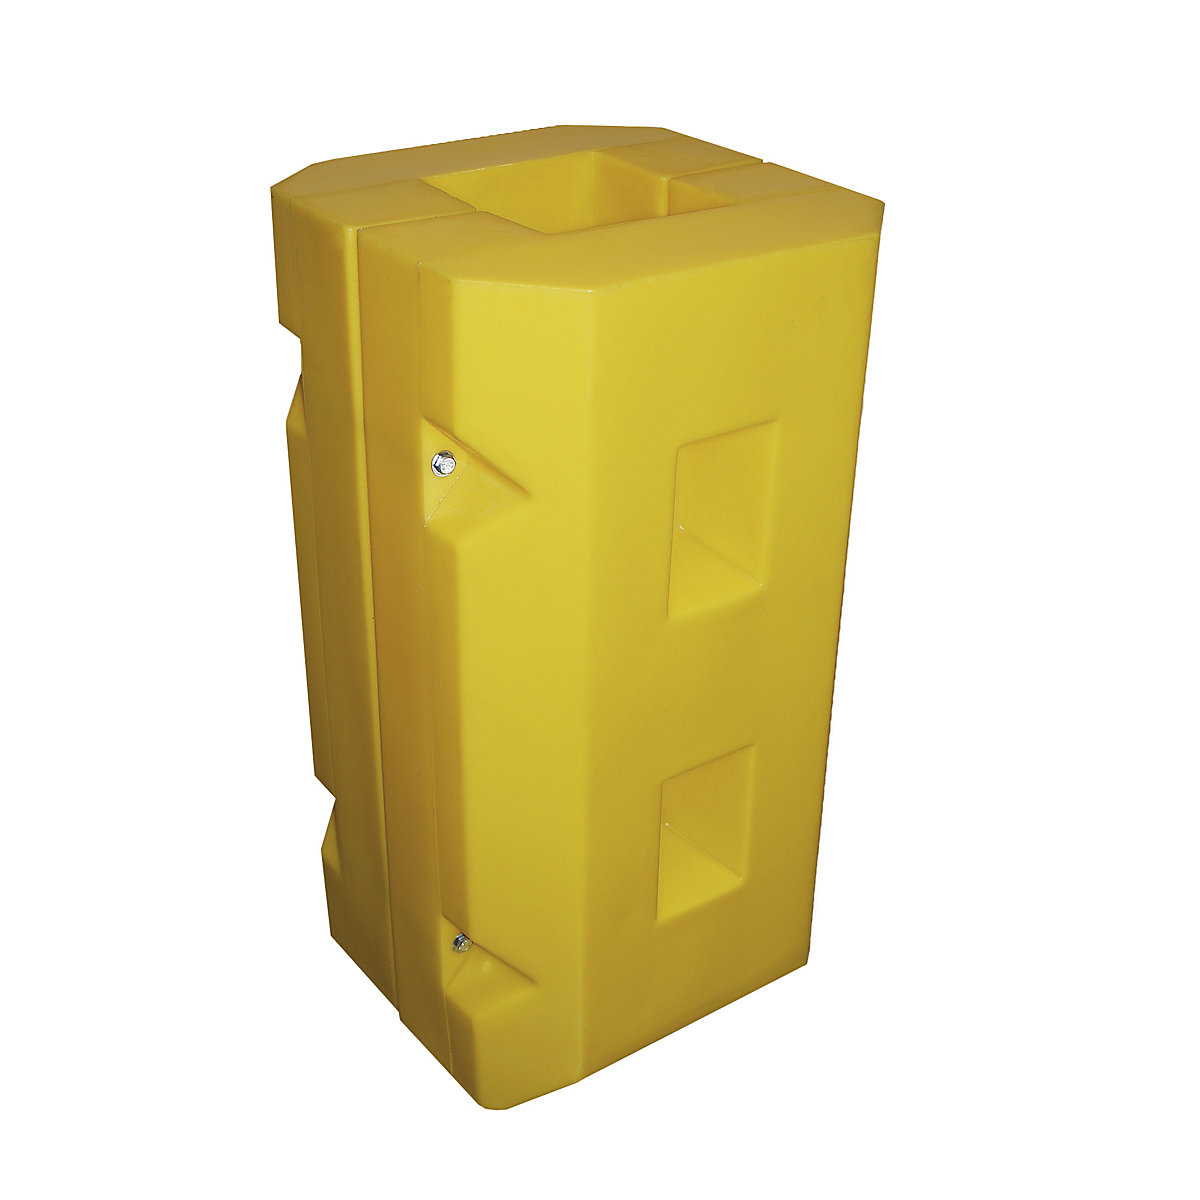 Säulen- und Pfostenschutz, aus Polyethylen, gelb, LxBxH 515 x 450 x 945 mm, Innenmaß 215 x 235 mm